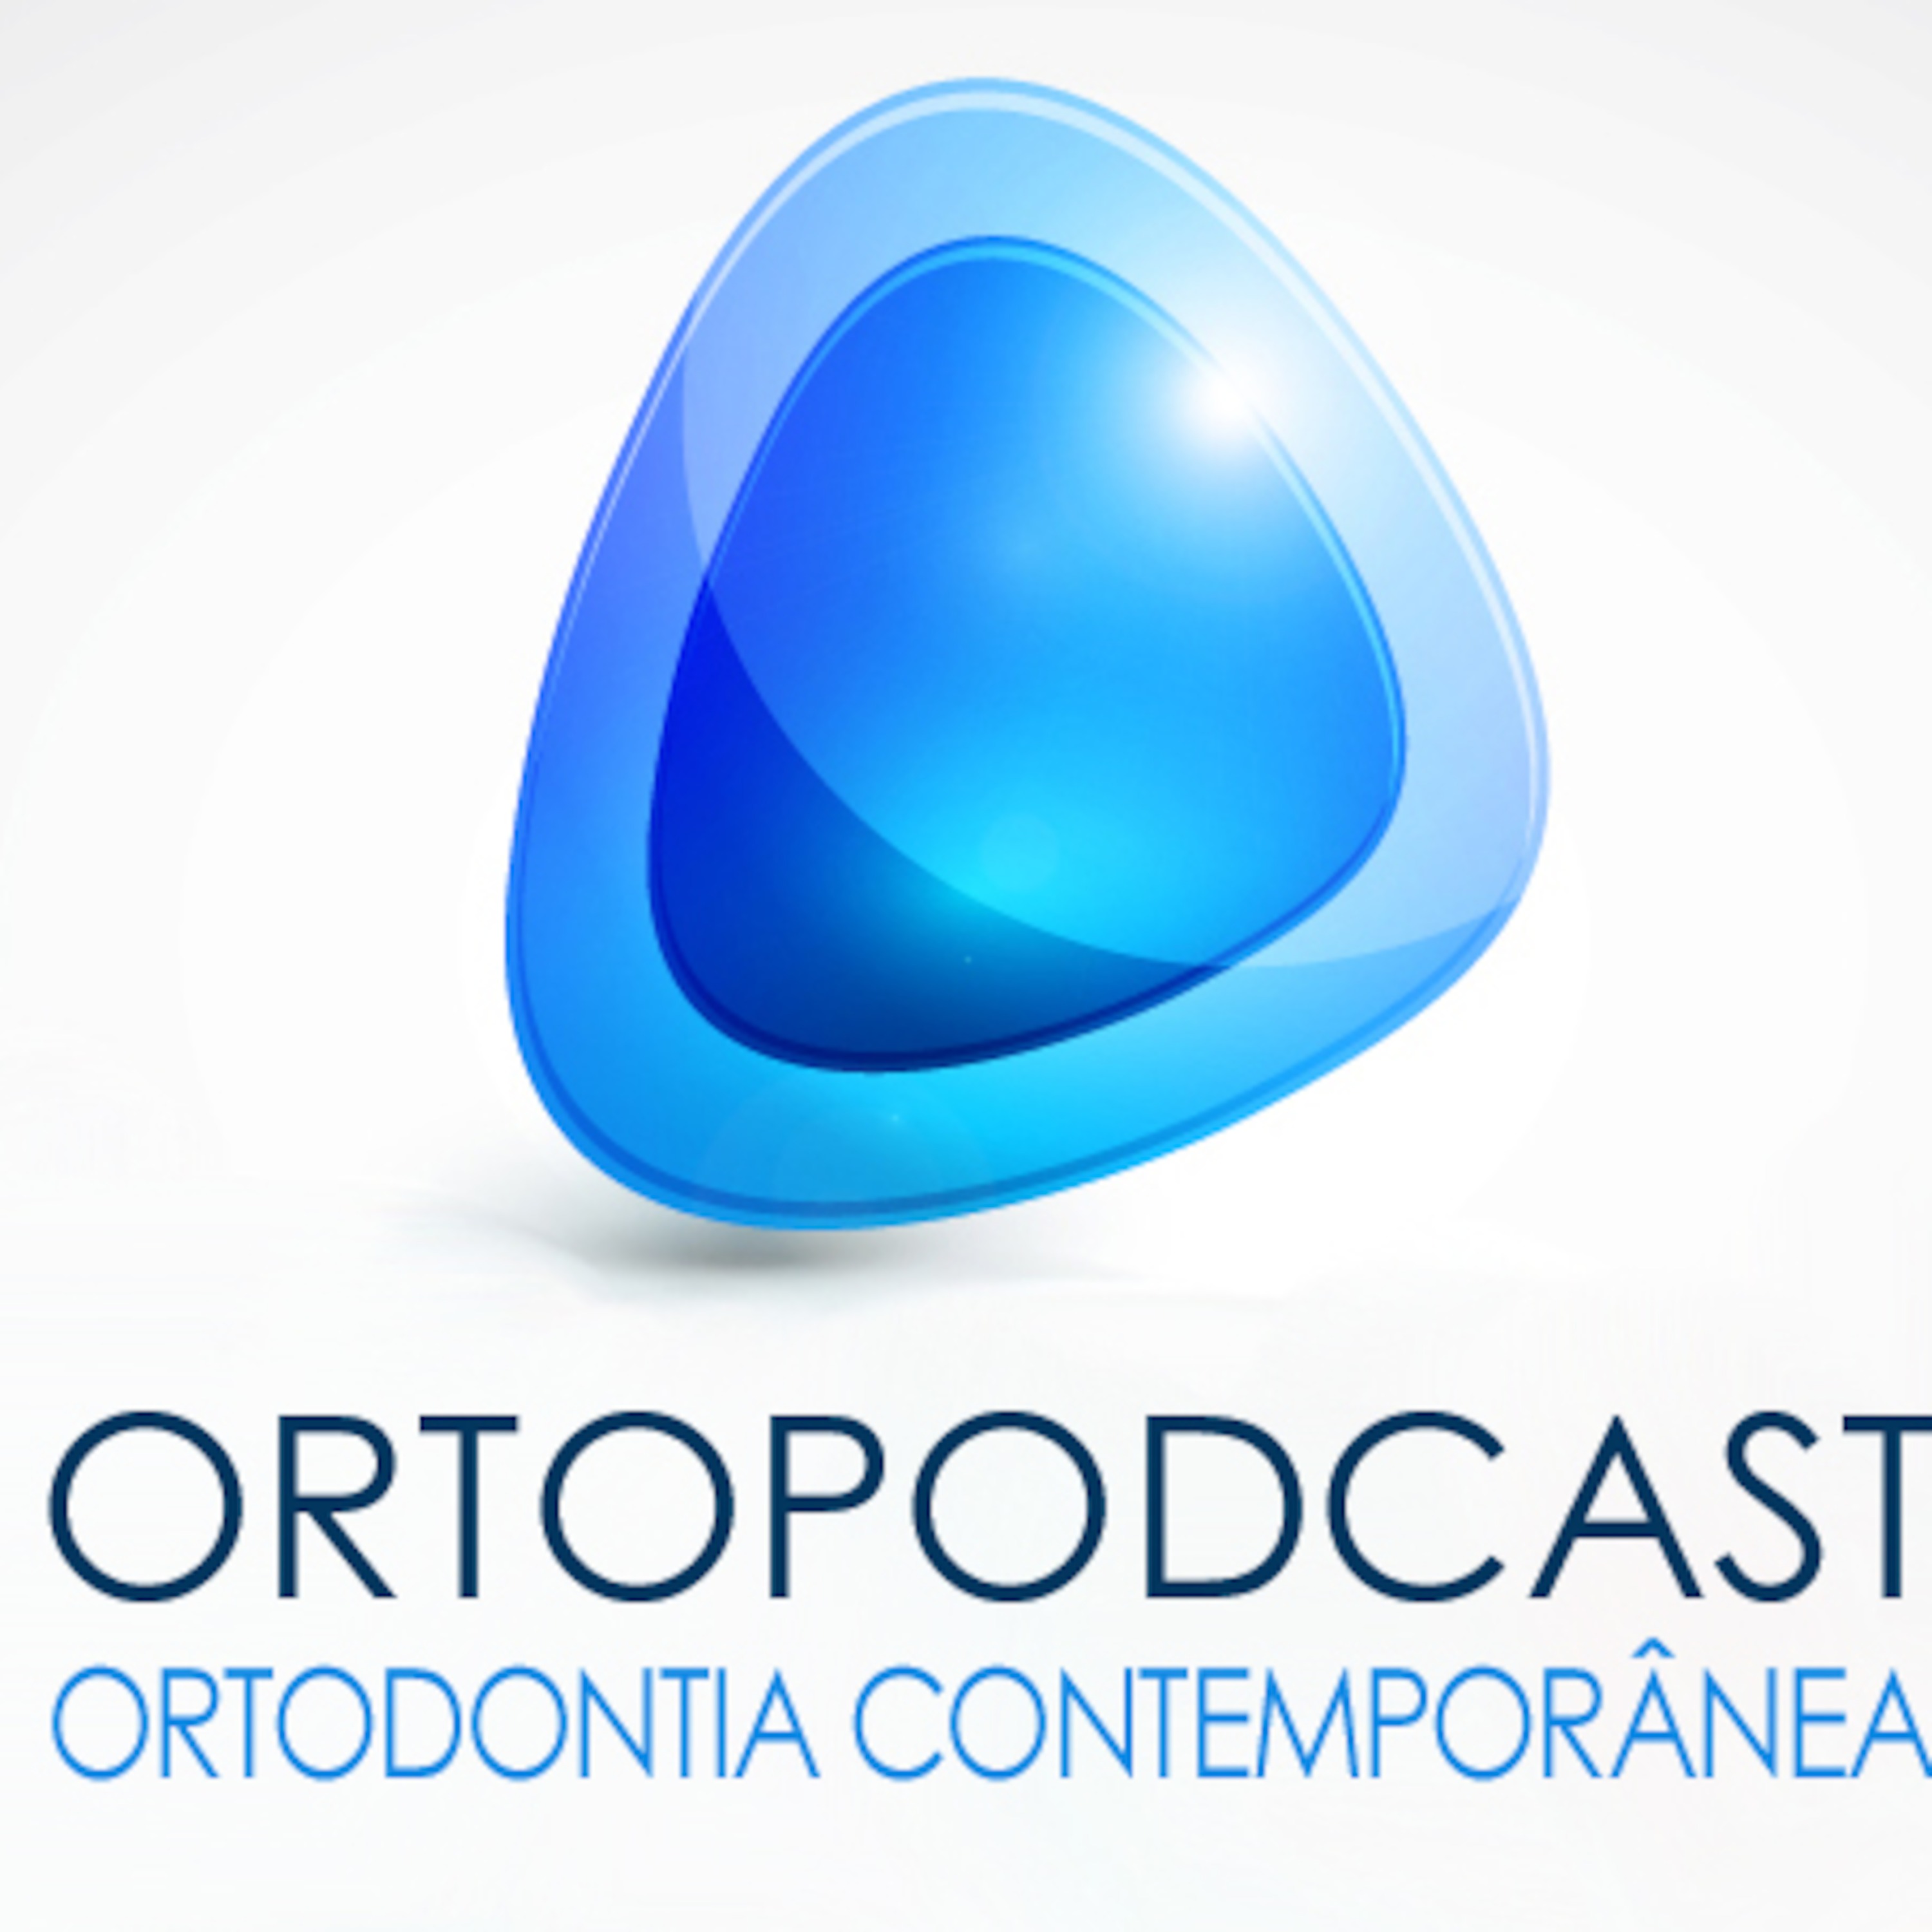 OrtoPodcast